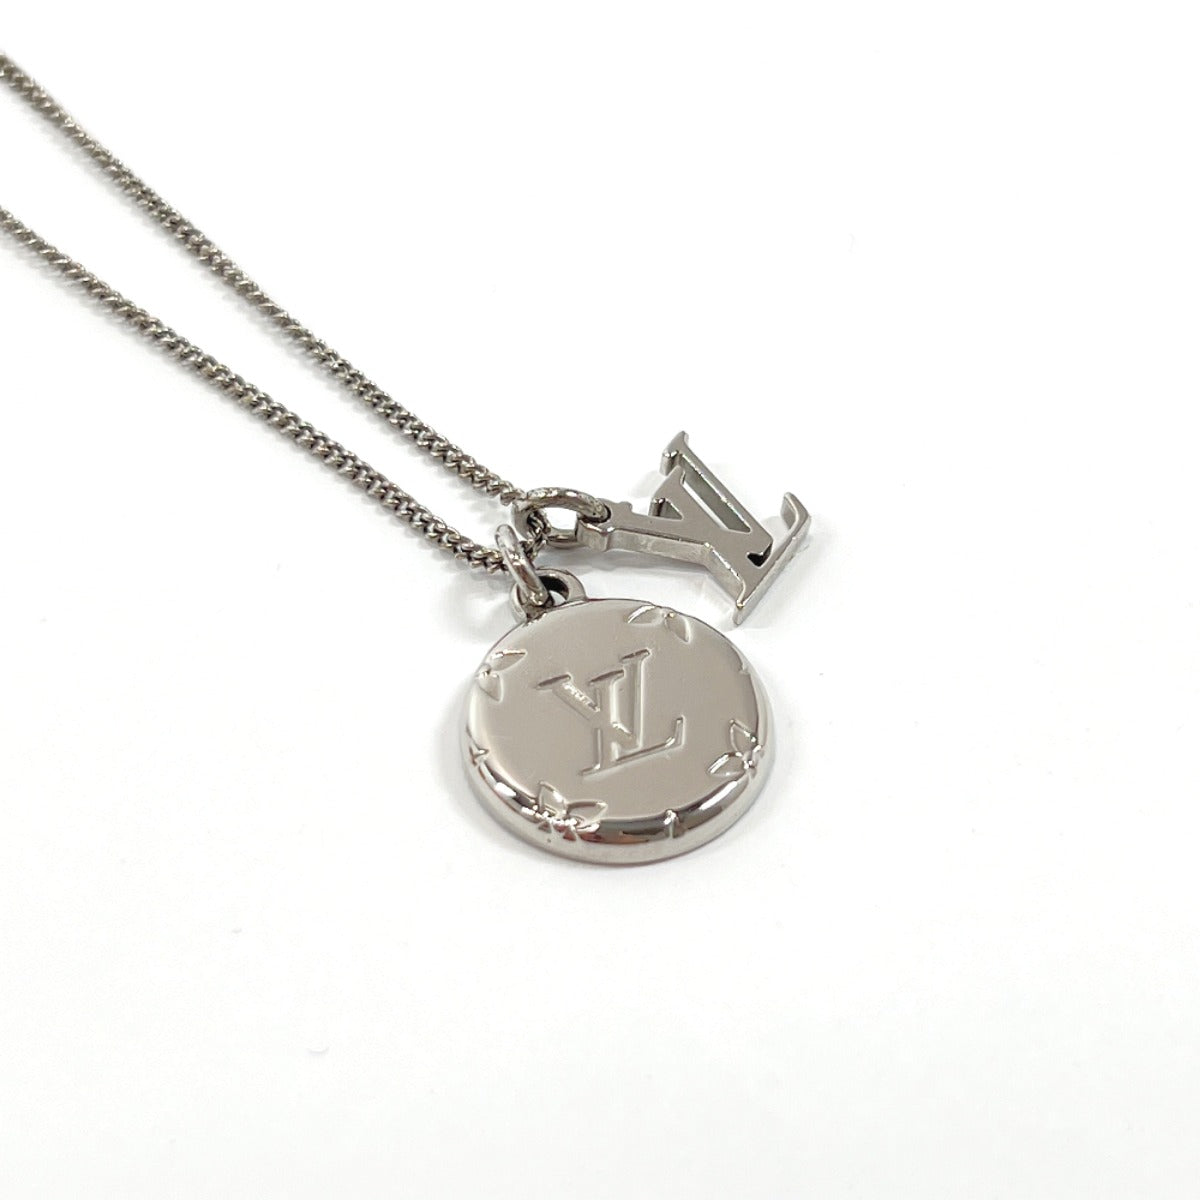 Louis Vuitton Mikey Monogram Necklace